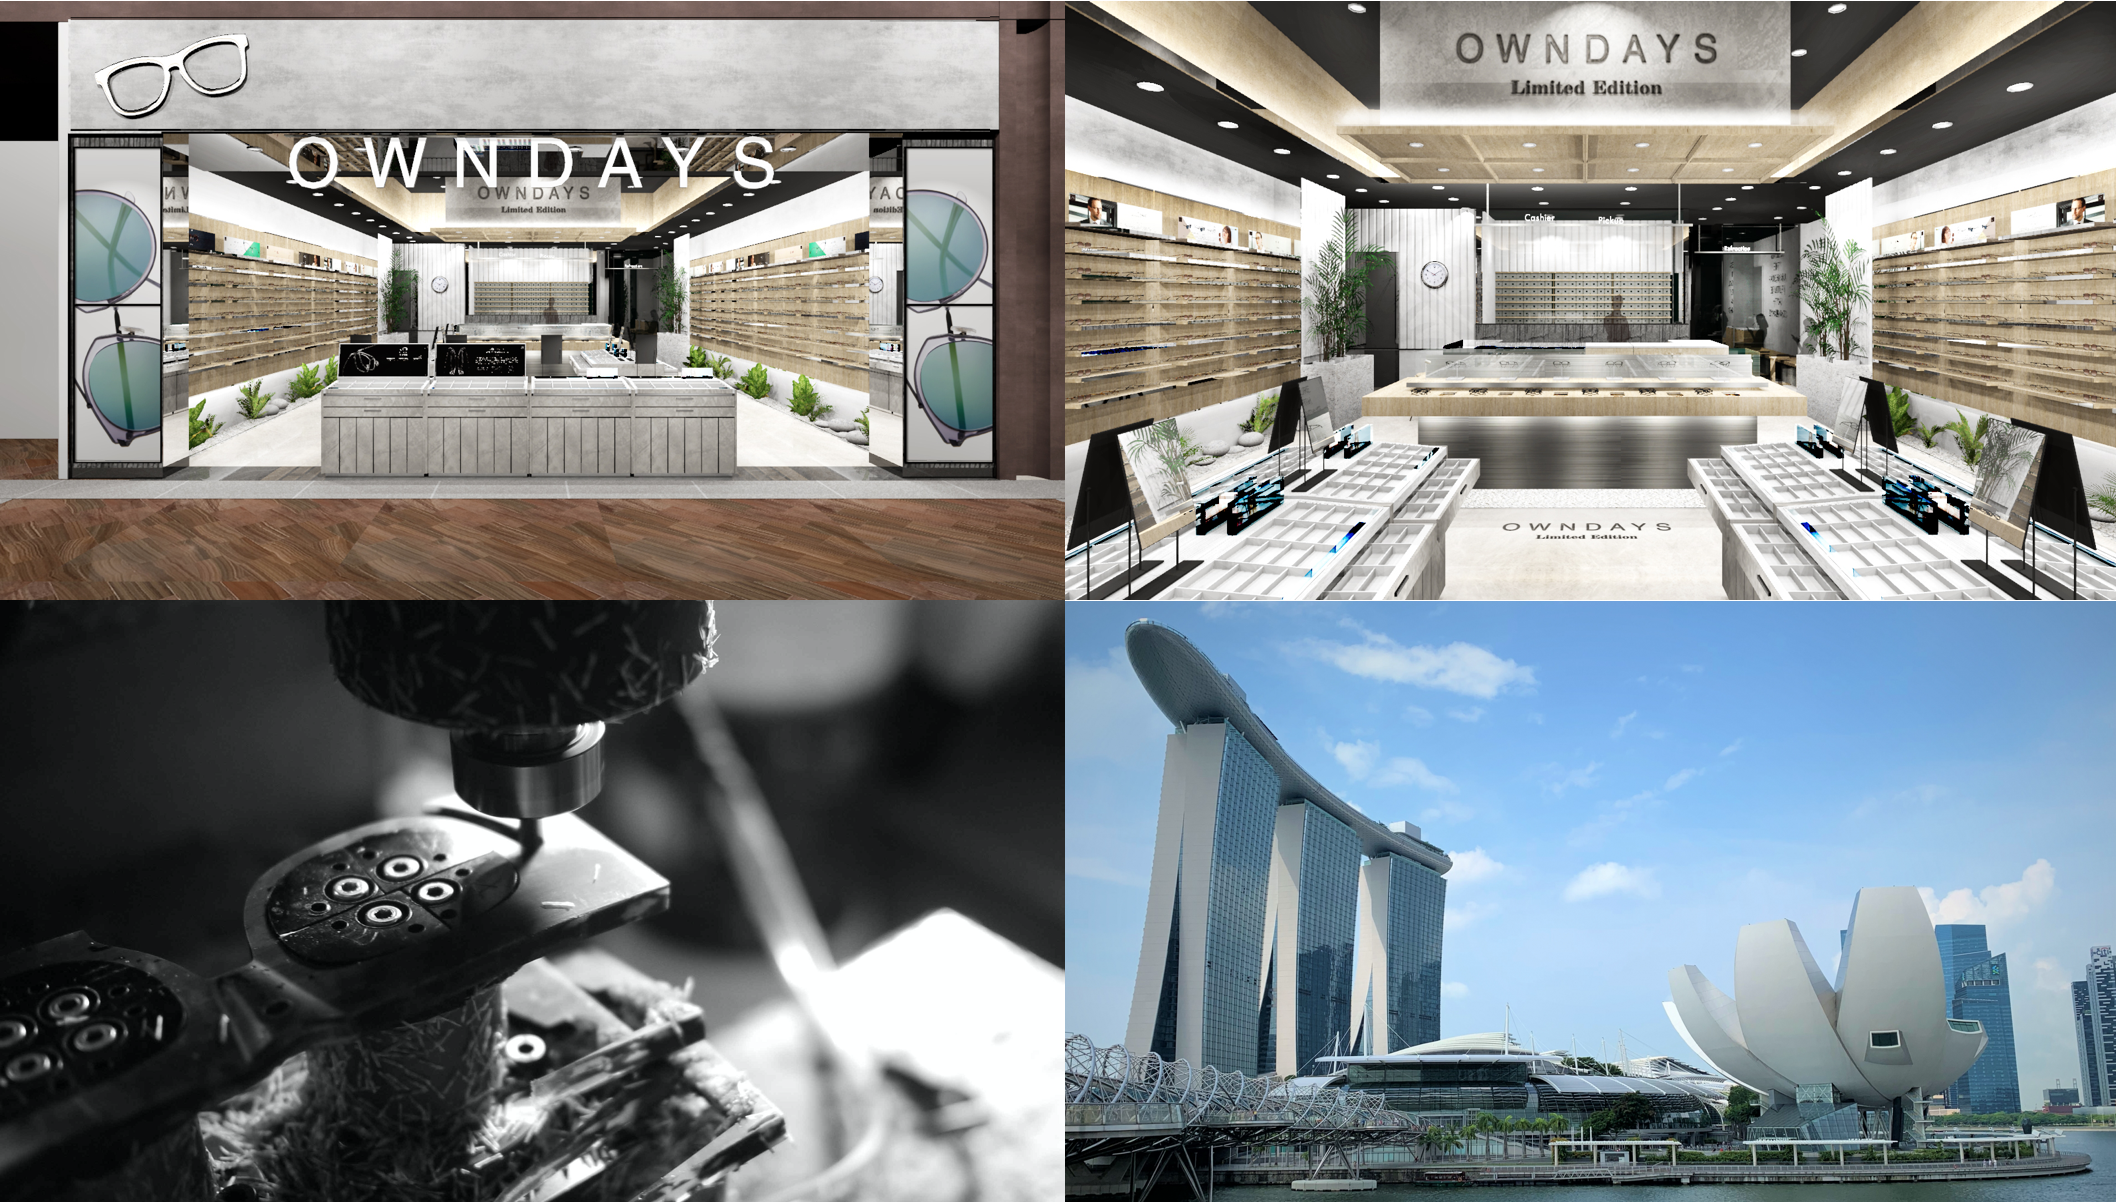 Owndays オンデーズ シンガポール国内30店舗 マリーナベイ サンズに新たな旗艦店をオープン Owndaysのプレスリリース